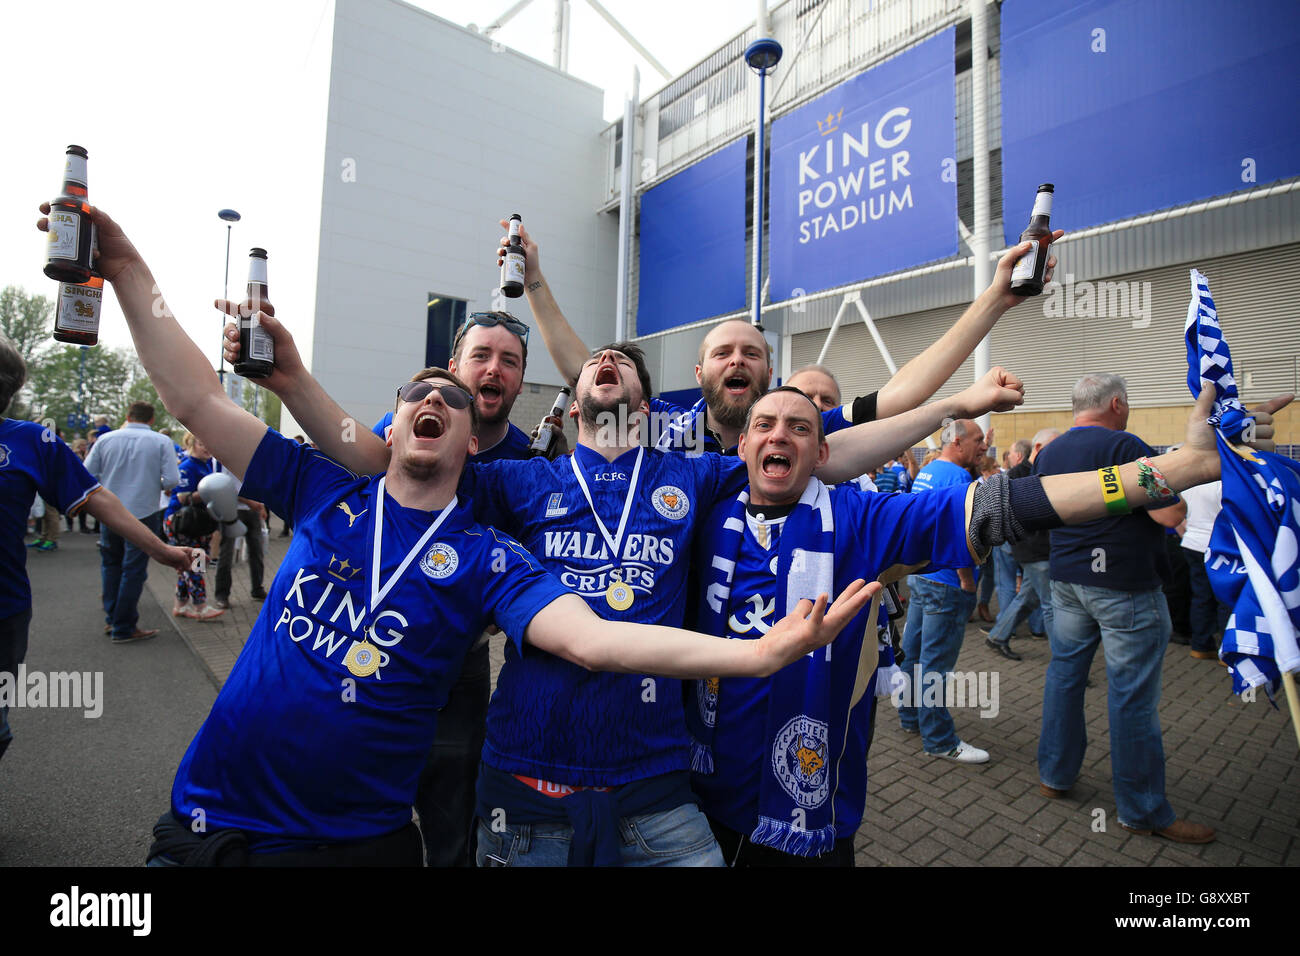 Les fans de Leicester City arborent un drapeau devant le roi Power Stadium avant le lancement Banque D'Images